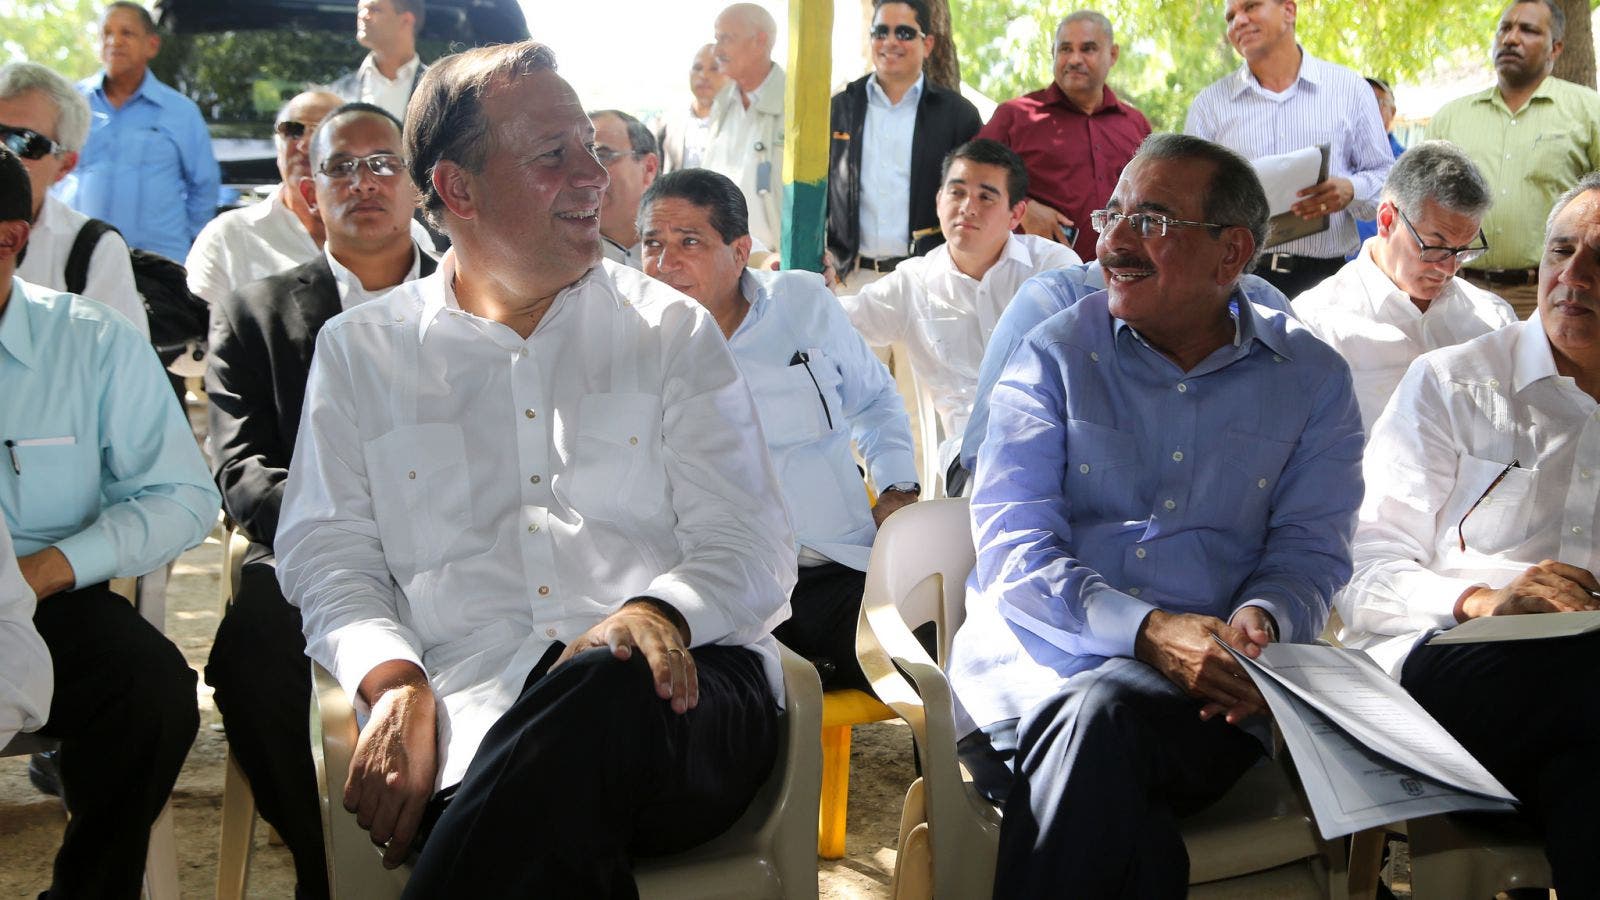 Presidente de Panamá acompaña a Danilo a Visita Sorpresa; replicará modelo en su país